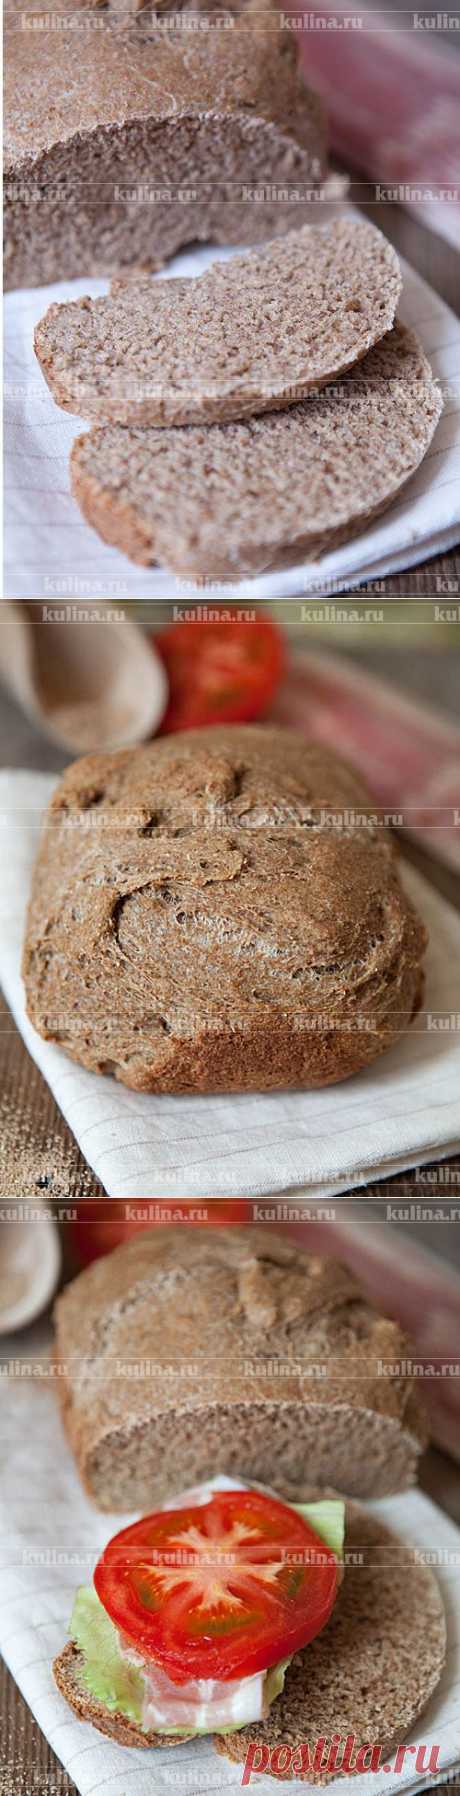 Хлеб с отрубями – рецепт приготовления с фото от Kulina.Ru